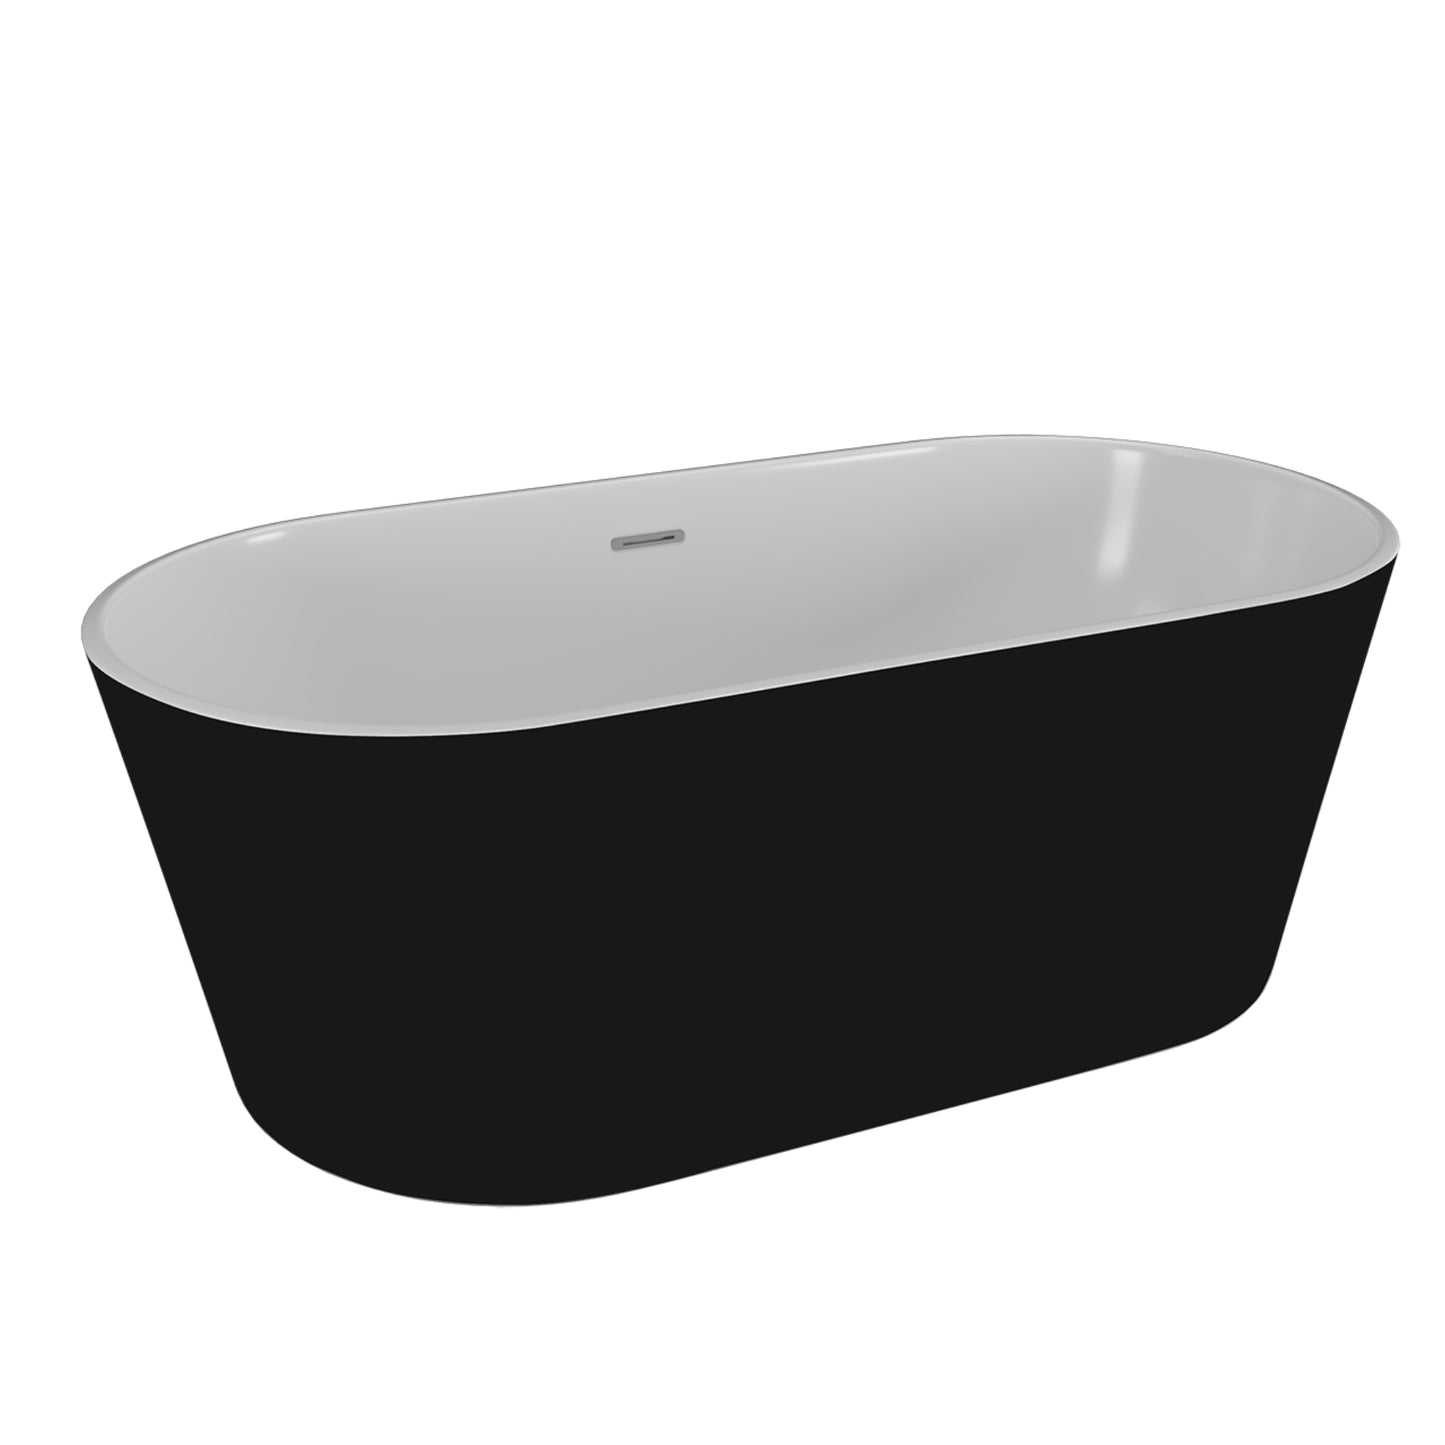 Acrylic freestanding bathtube UZO 160 x 80 cm